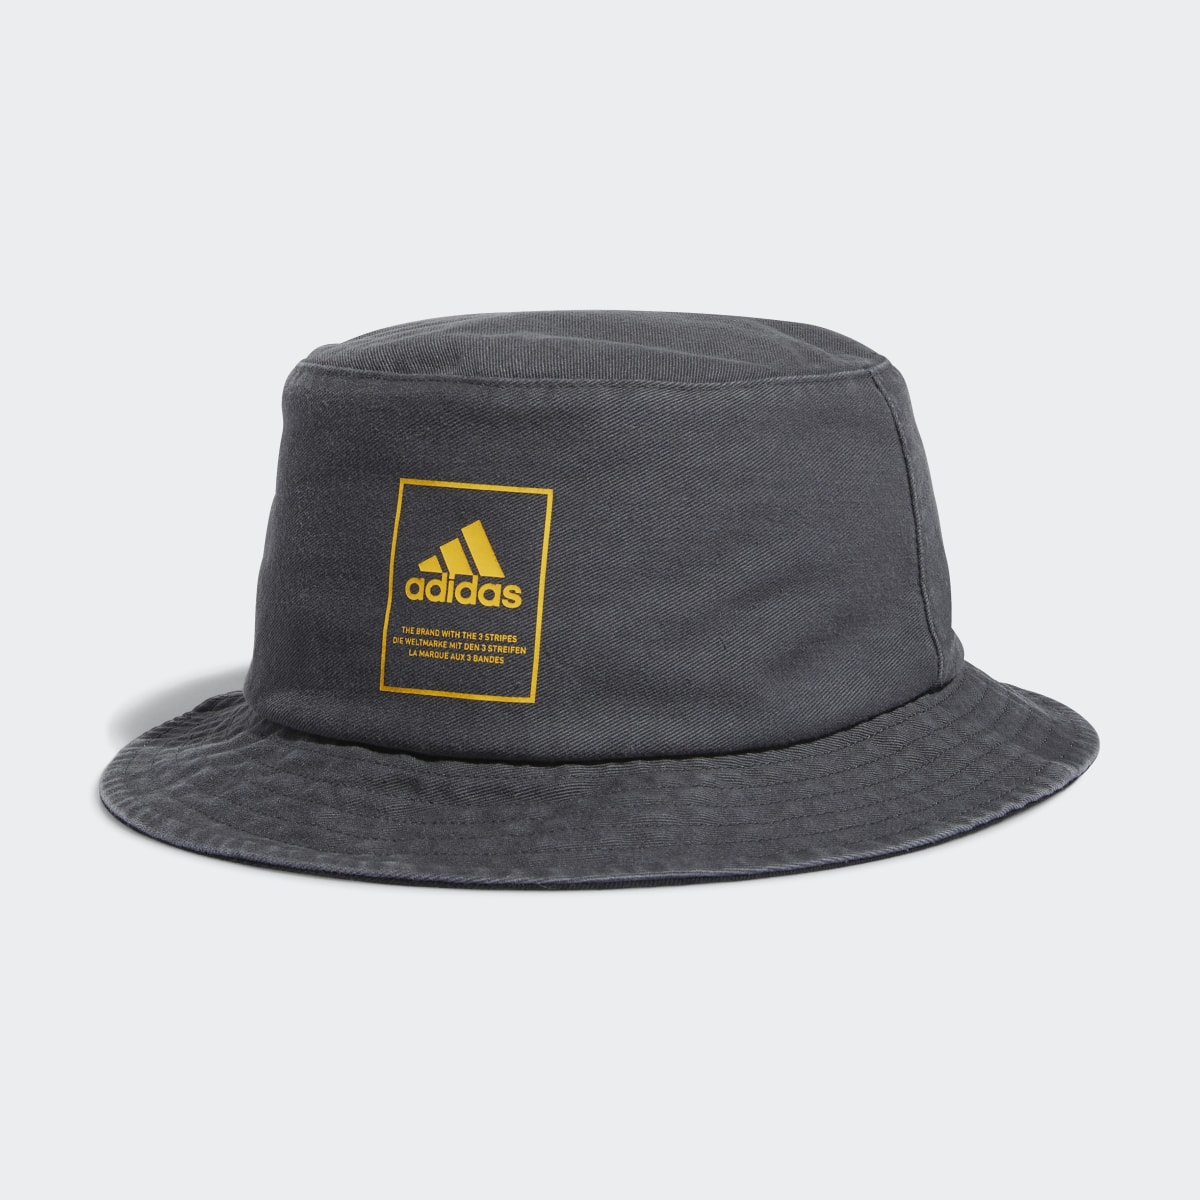 Adidas Lifestyle Washed Bucket Hat. 4